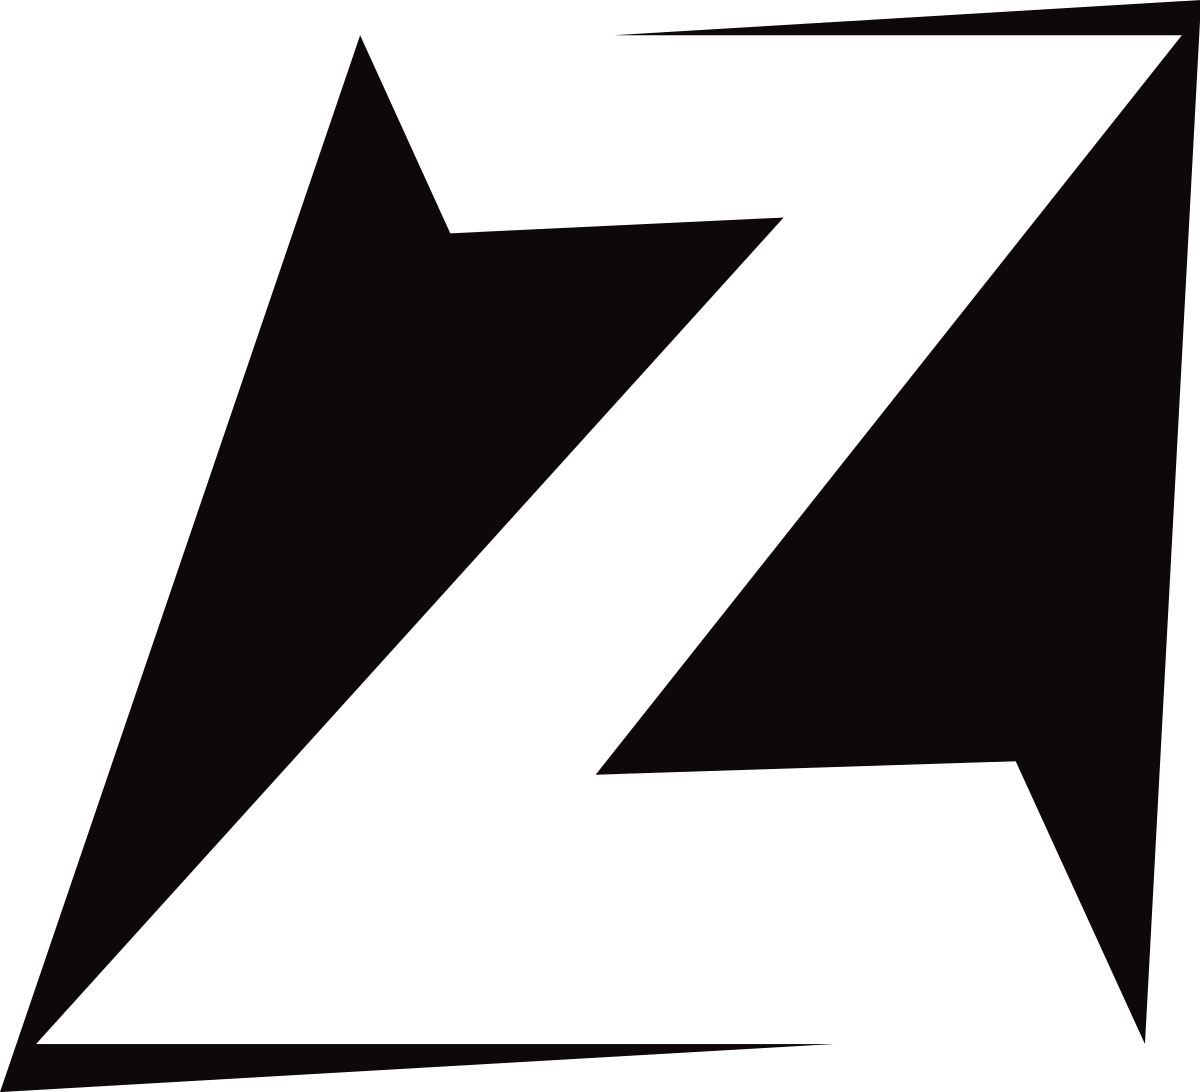 Channel logo for Ztélé